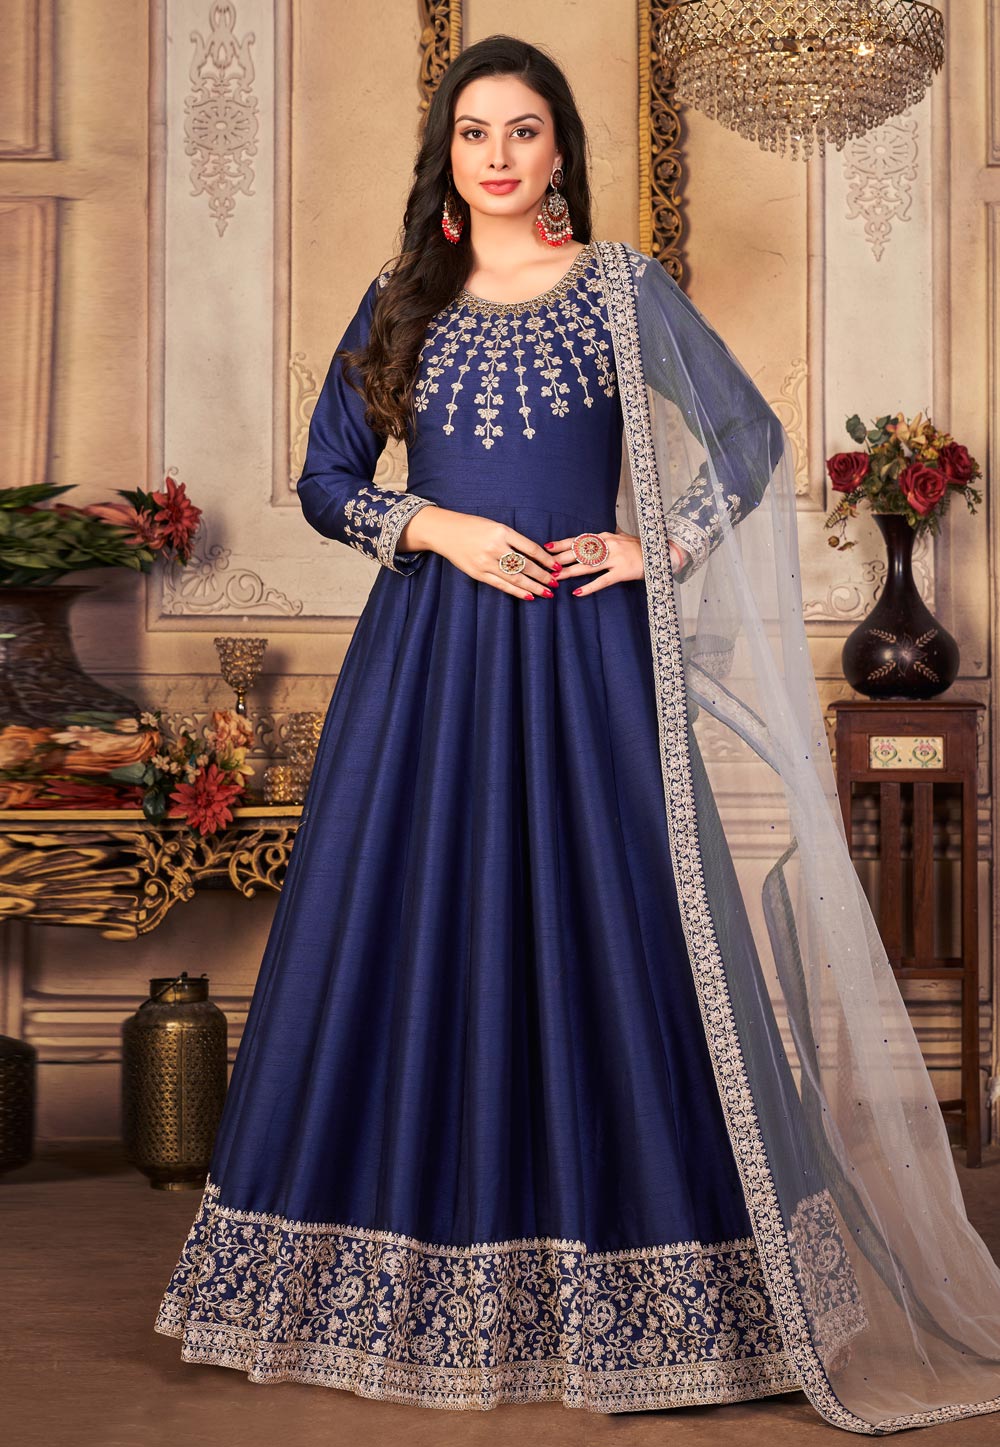 Butterfly Net Anarkali Dress Salwar Kameez - Indian Dress - C681D |  Fabricoz USA